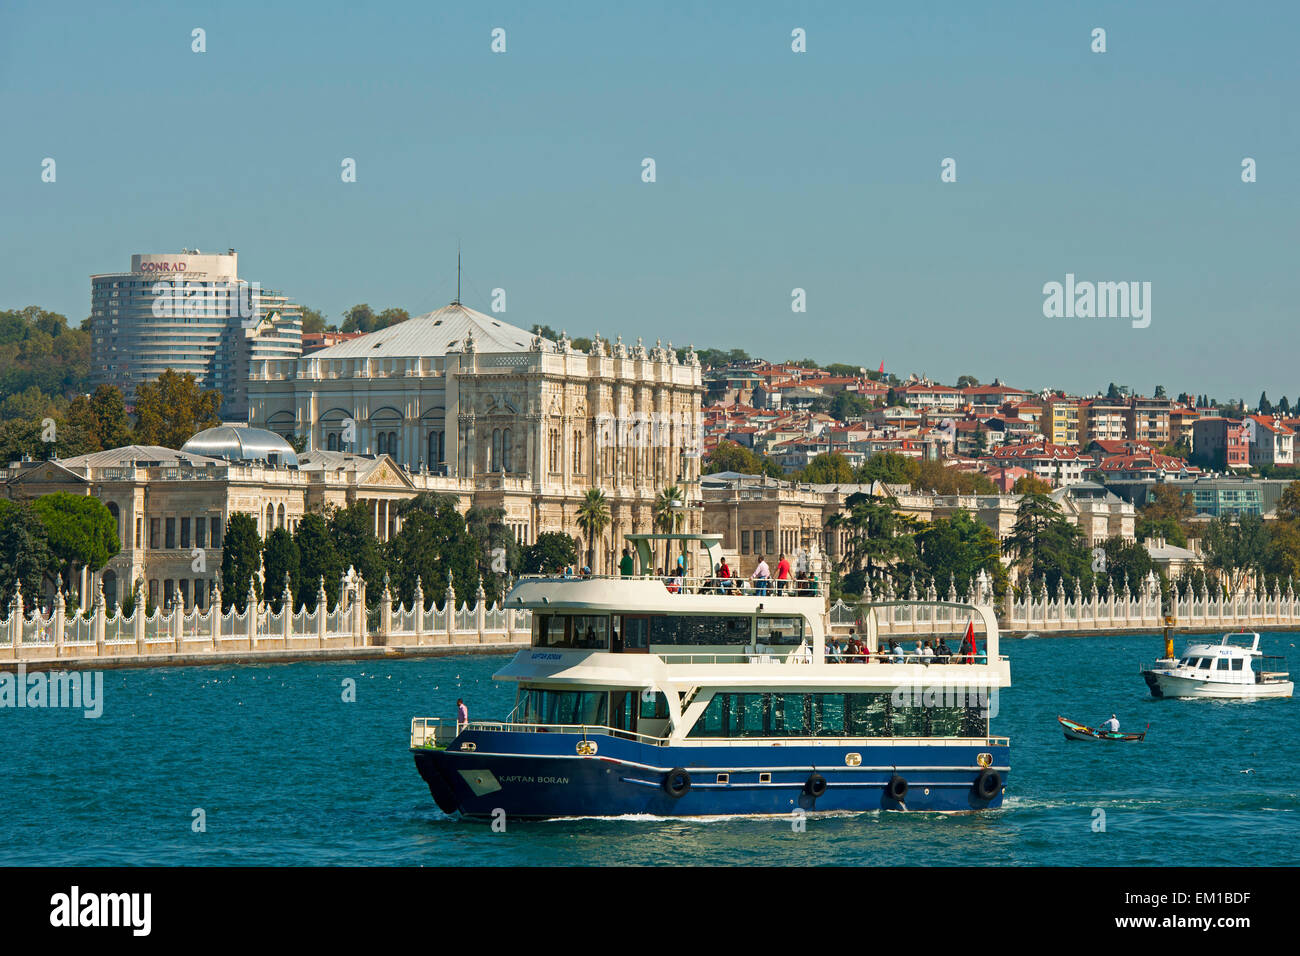 Ägypten, Istanbul, Besiktas, der Dolmabahçe-Palast Oder Dolmabahce Sarayi (Palast der Aufgeschütteten Gärten) so bin Europäisch Stockfoto